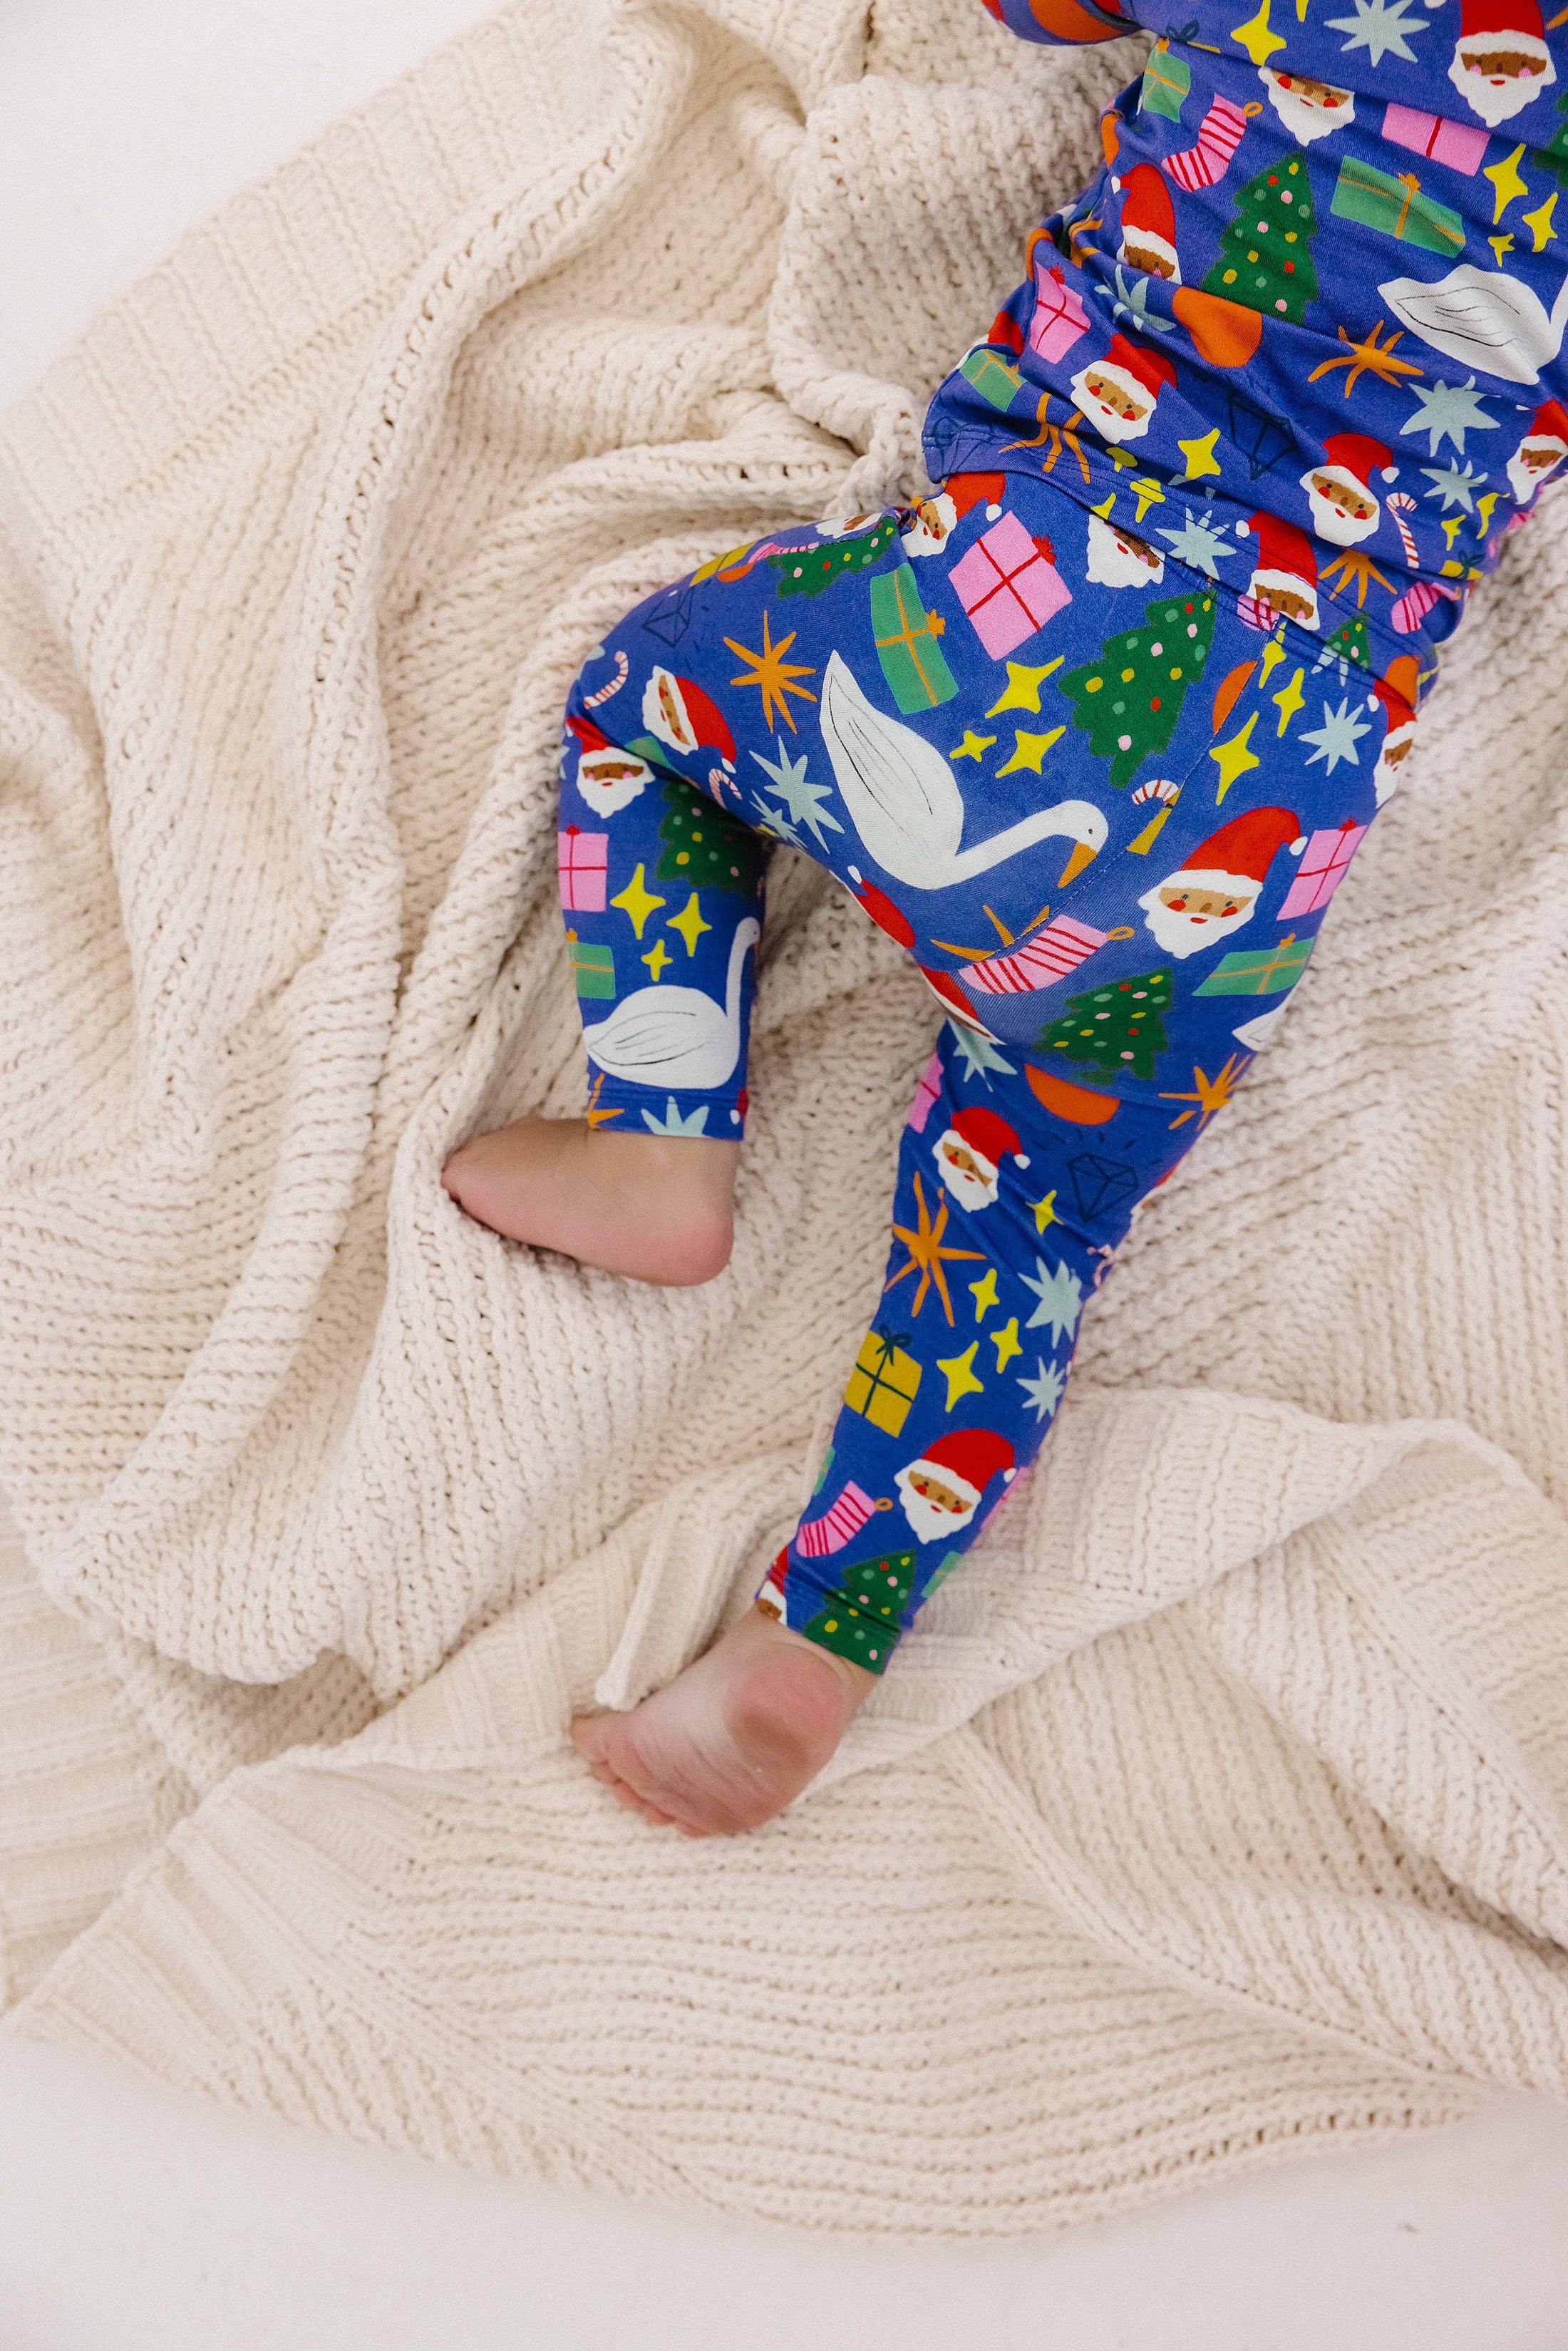 12 days of Christmas Footie Pajama